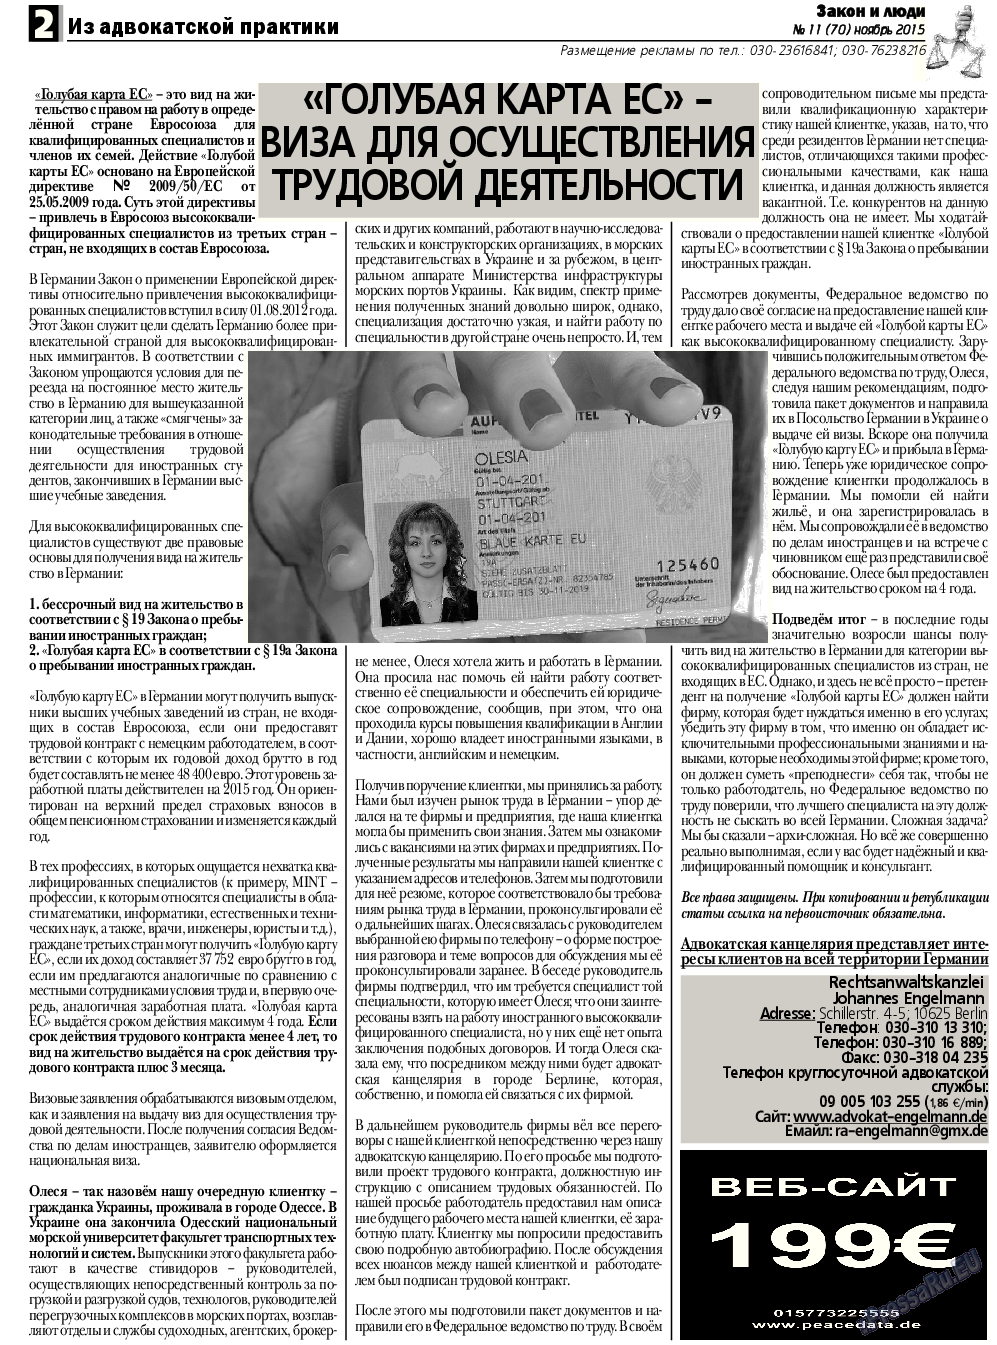 Закон и люди, газета. 2015 №11 стр.2